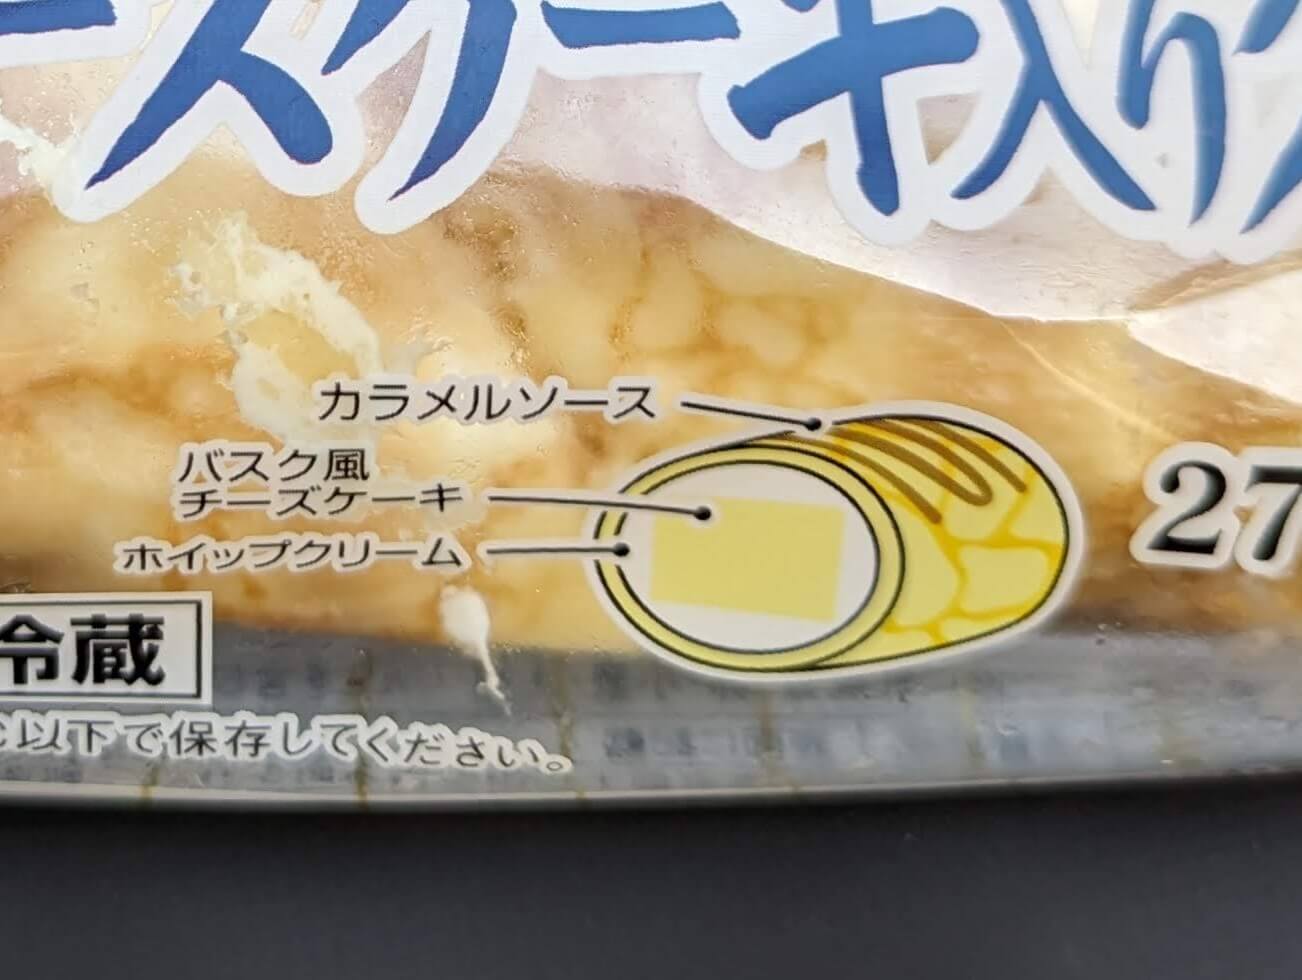 山崎製パン・バスク風チーズケーキ入りクレープ (7)